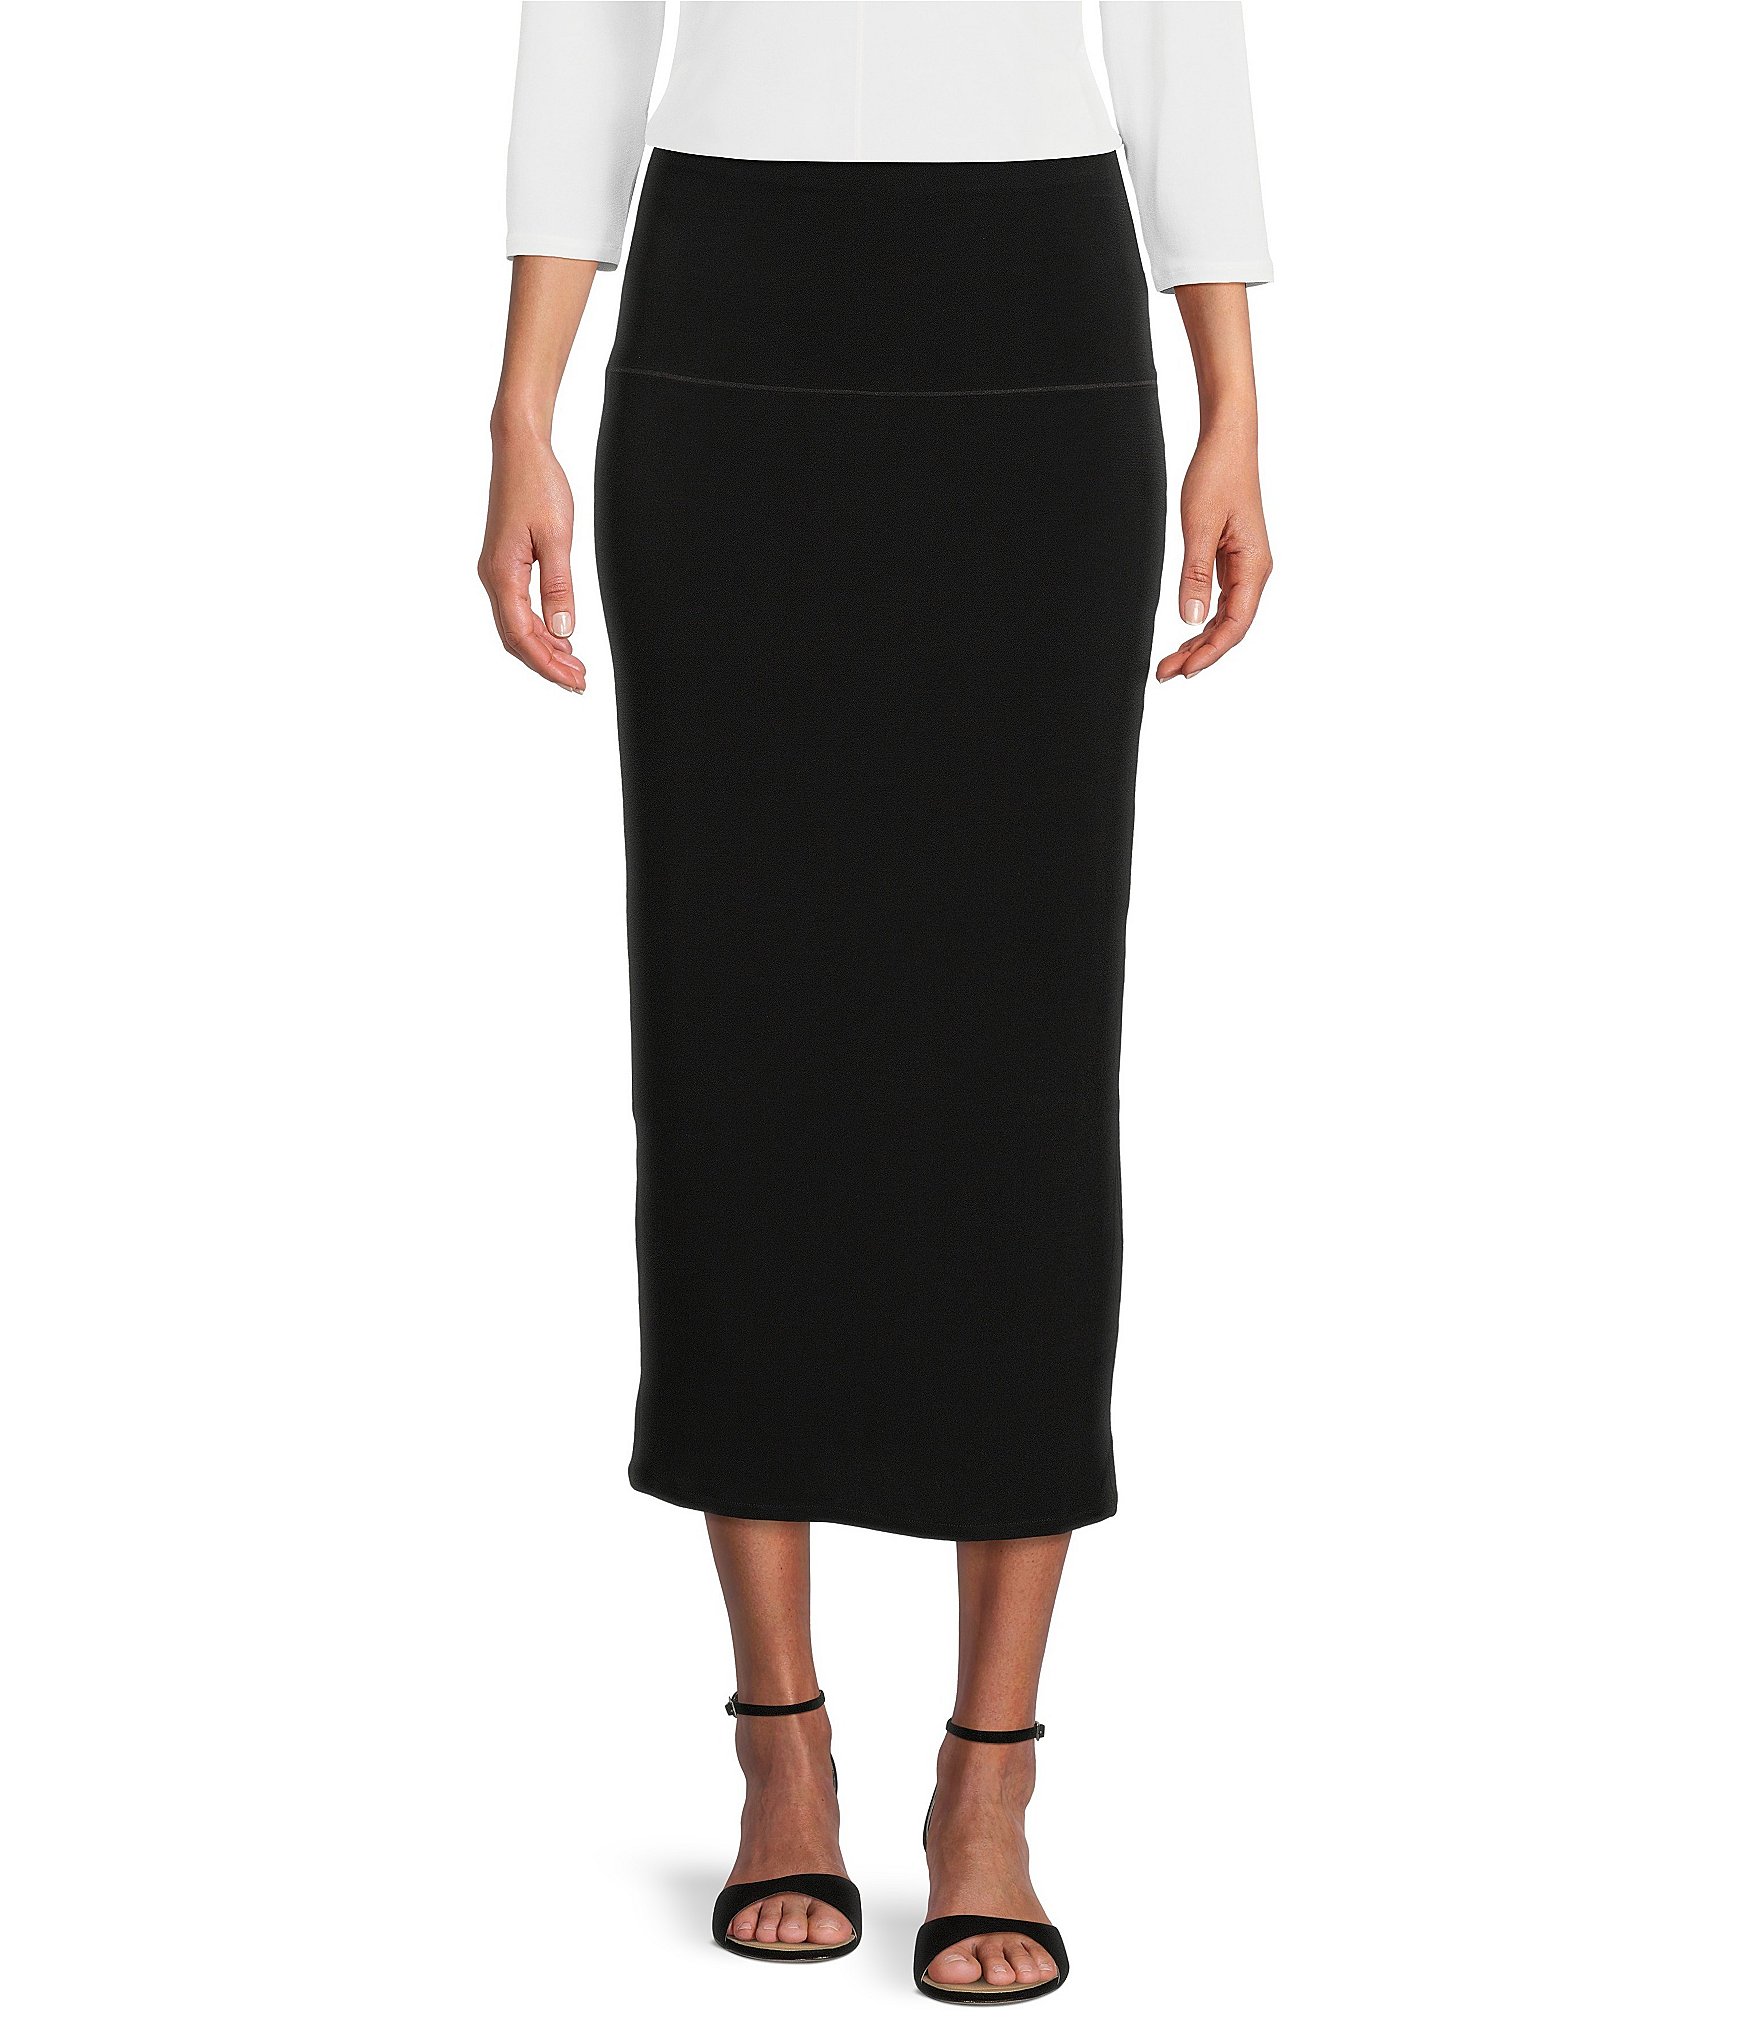 Double Waistband Folded Tight Short Skirt – EvaVarro